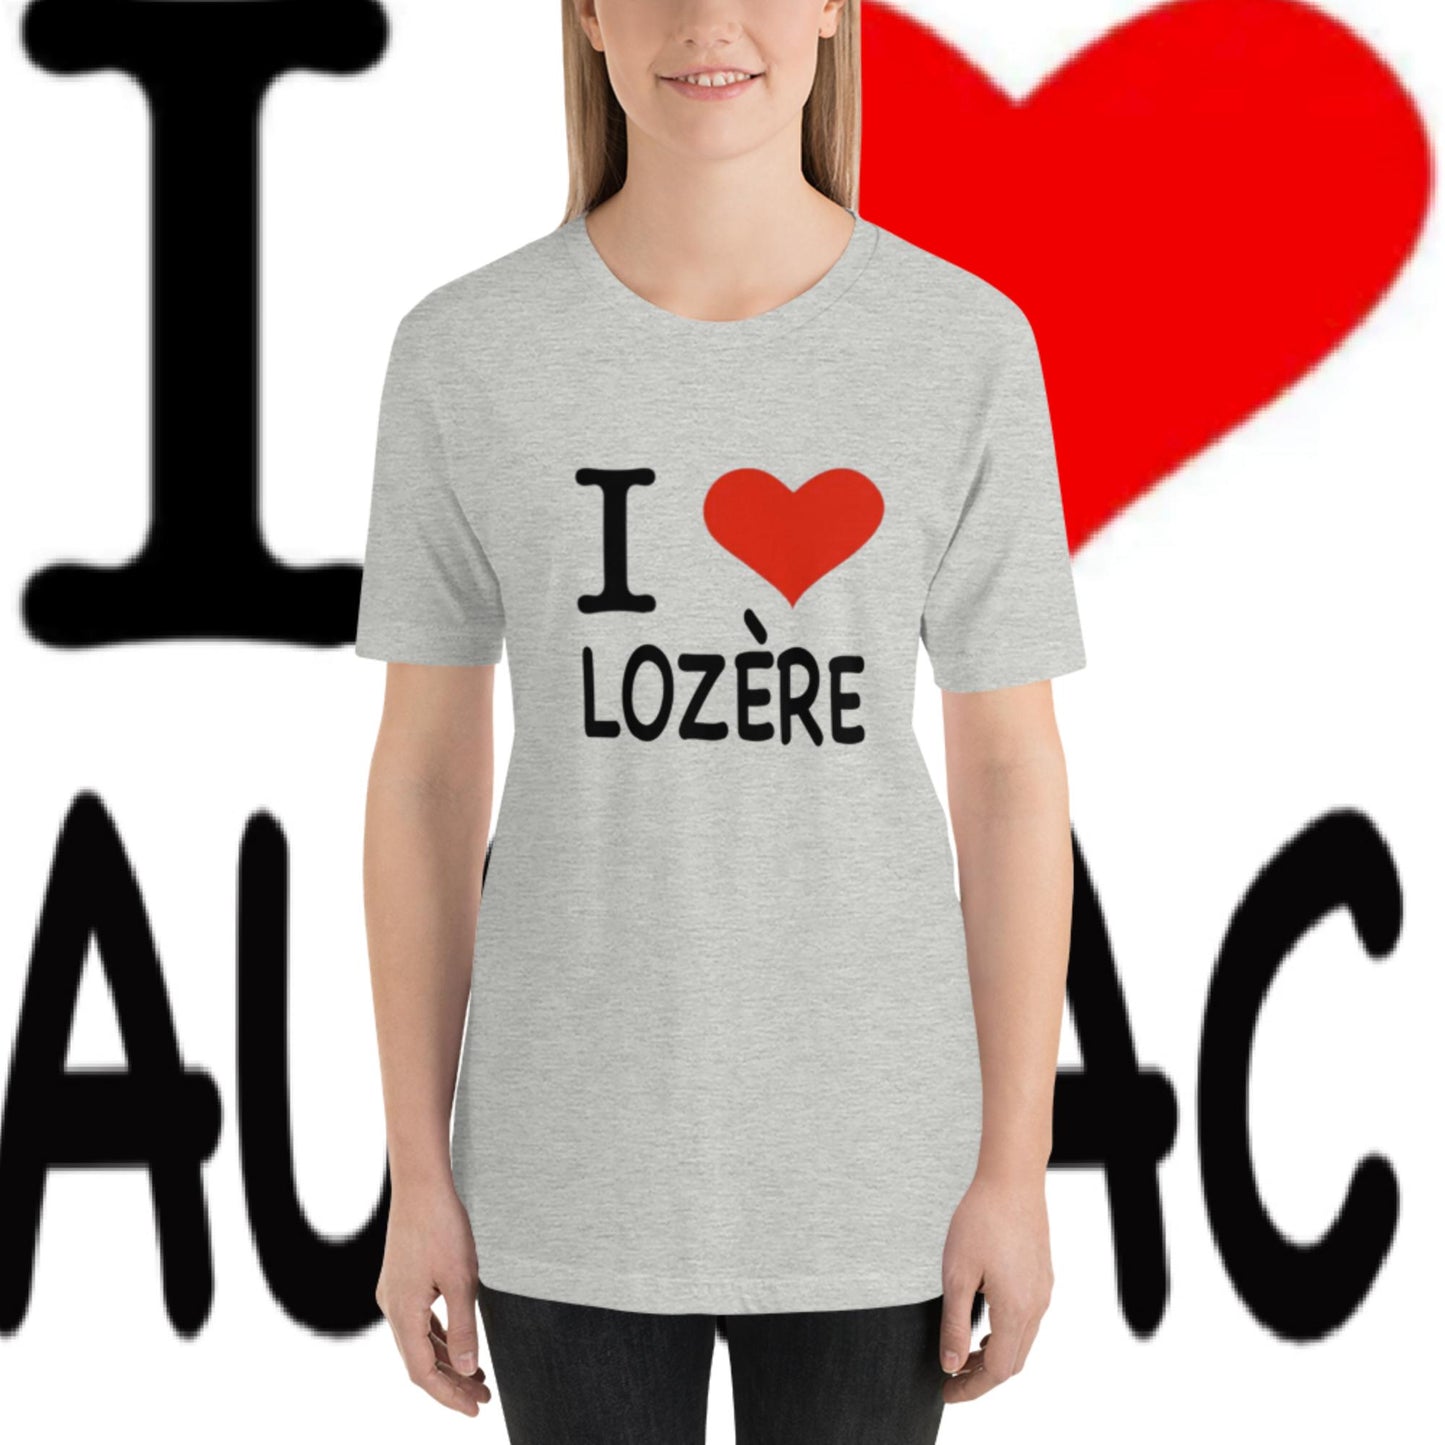 I love LOZERE, T-shirt unisexe